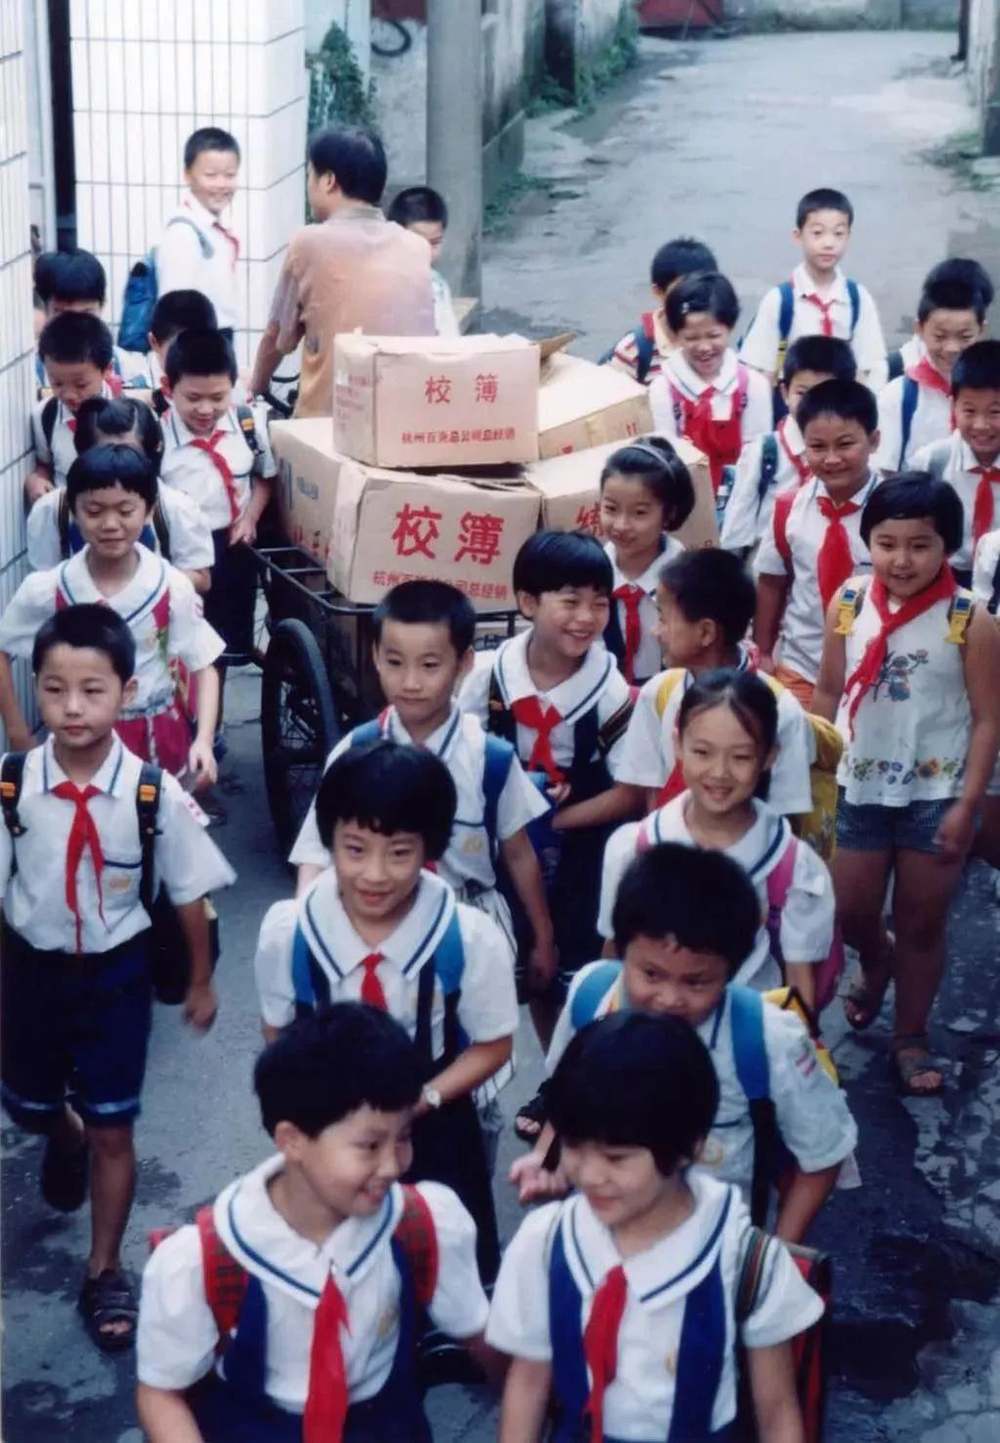 1987年，宗庆后当上杭州上城区校办企业经销部的经理，那是娃哈哈的起点。图为宗庆后踩着三轮车送校簿的背影。图片来源：浙商杂志